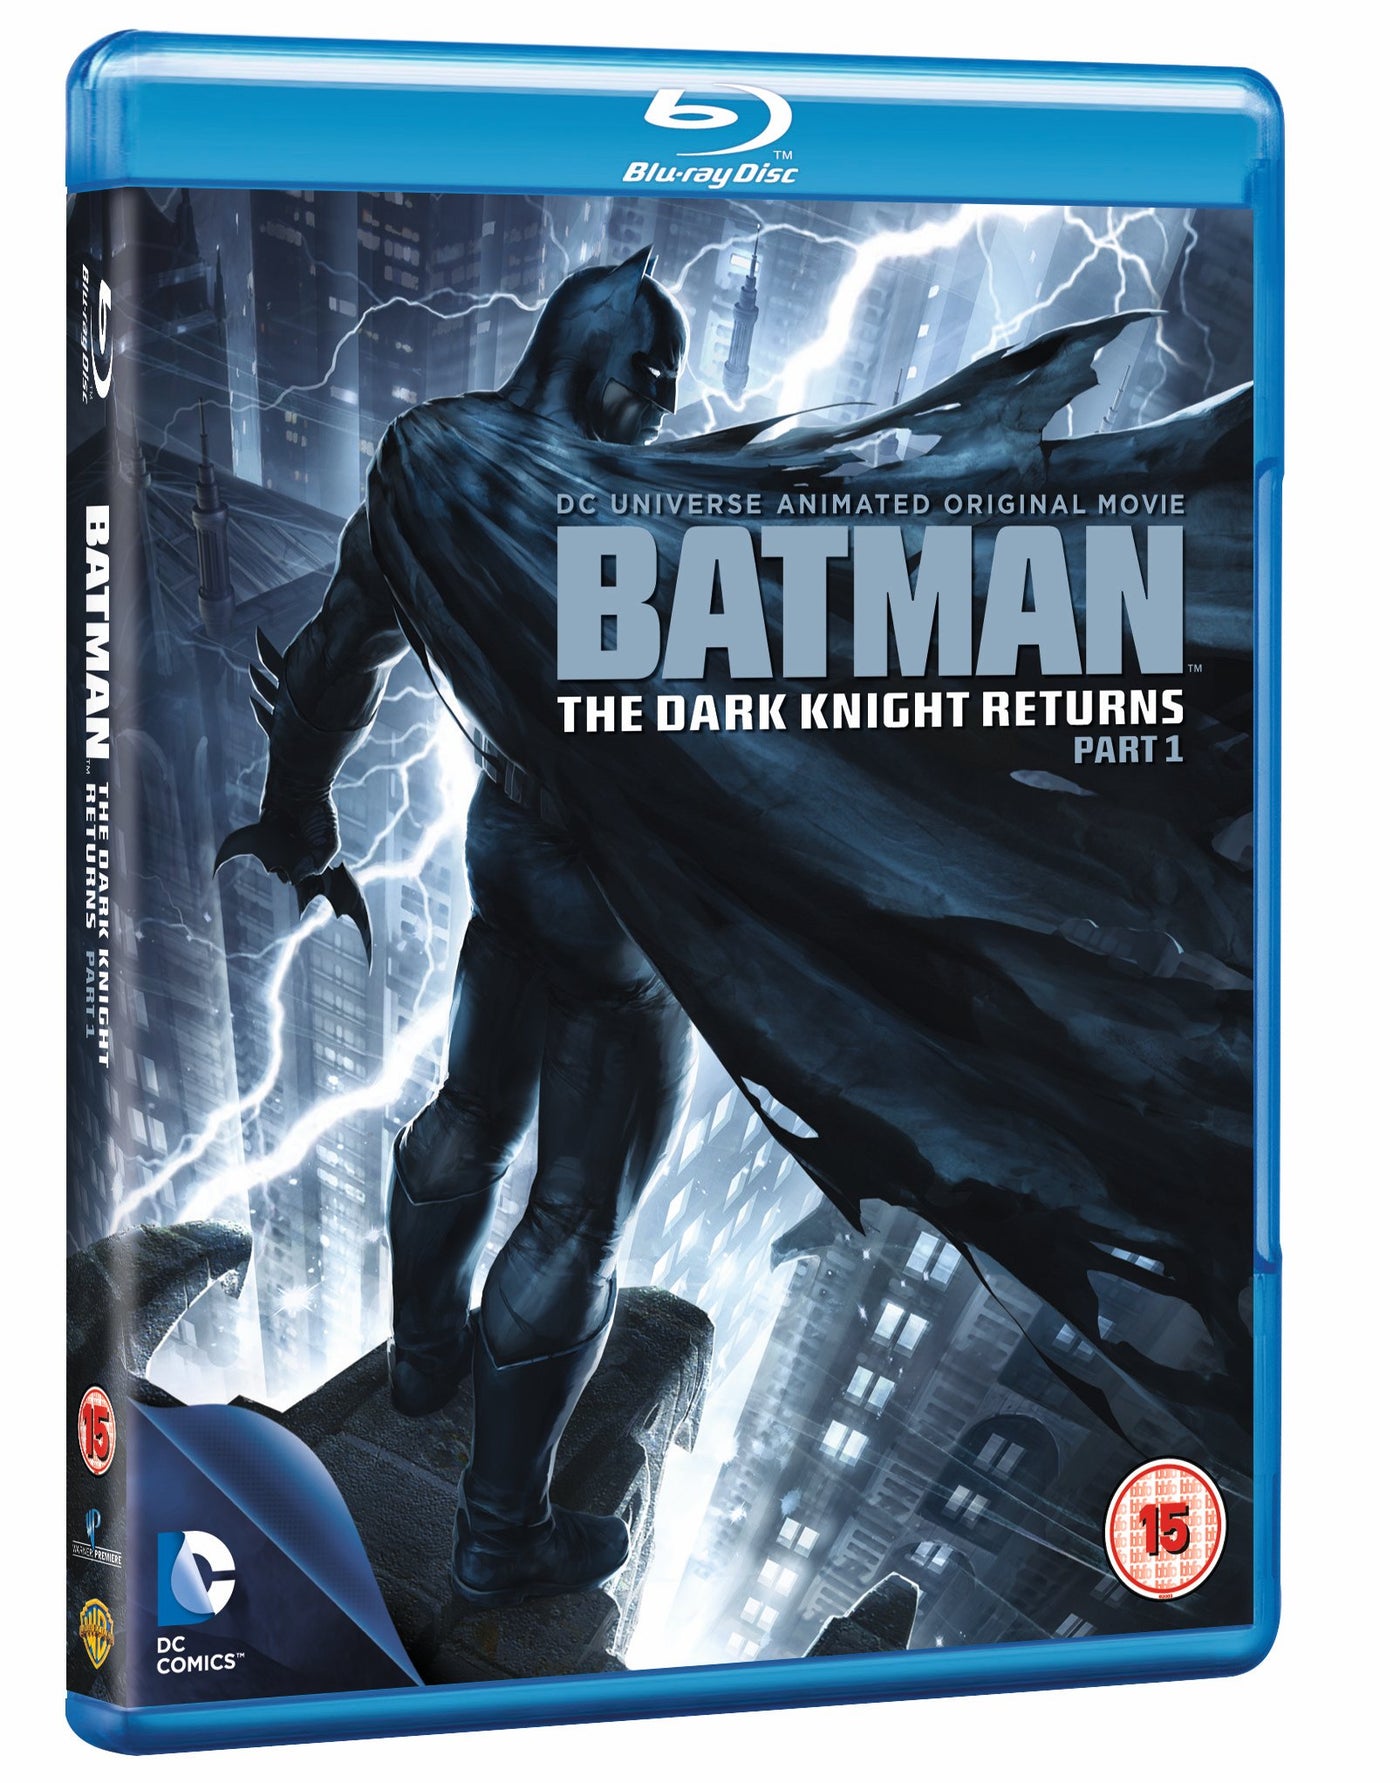 Batman: The Dark Knight Returns Part 1 (Blu-ray)